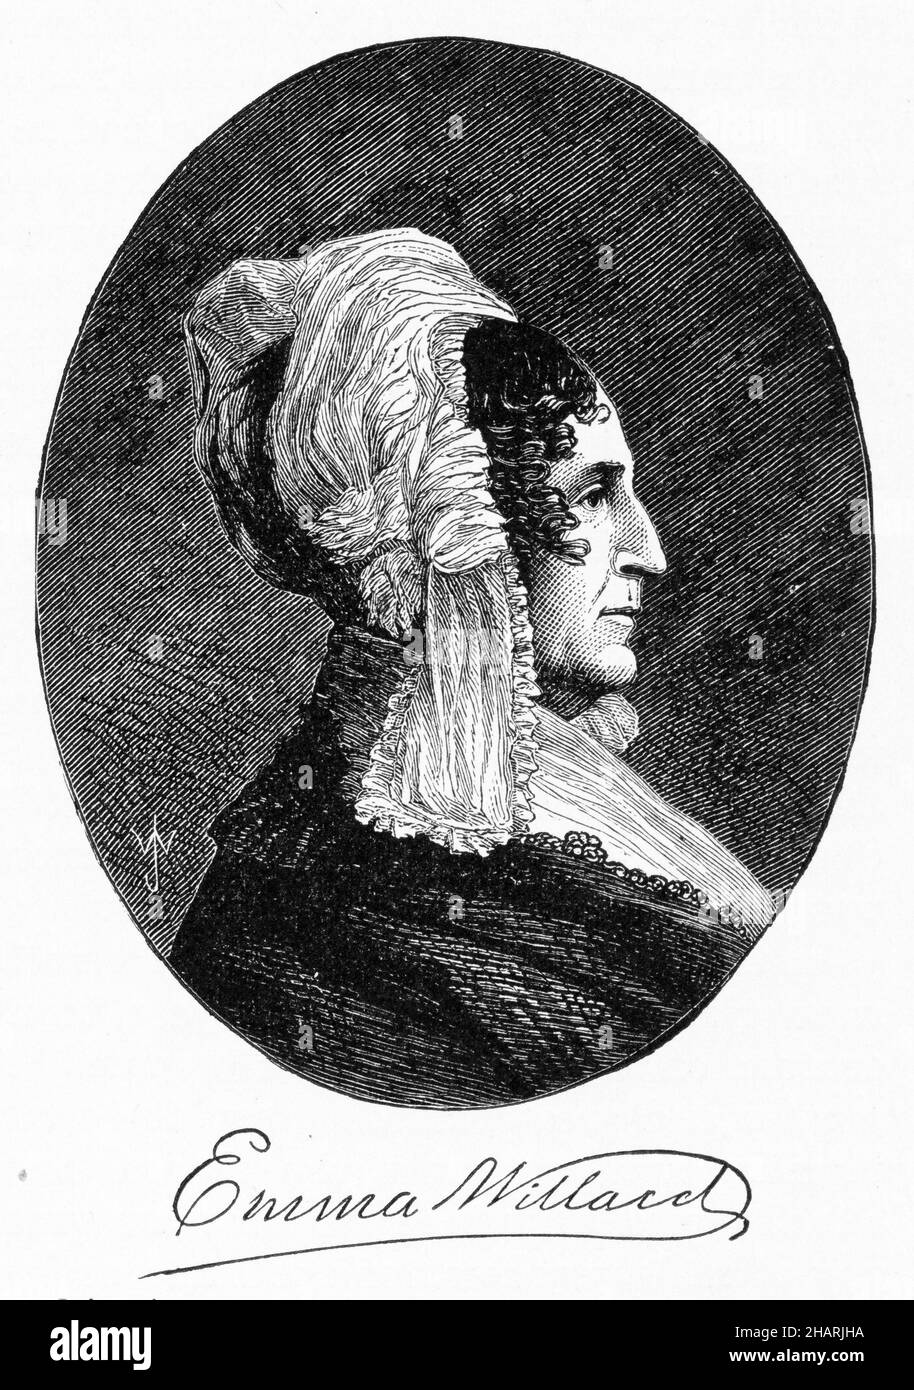 Eingraviertes Porträt von Emma Hart Willard (1787 – 1870), einer amerikanischen Frauenrechtlerin, die ihr Leben der Bildung widmete. Sie arbeitete an mehreren Schulen und gründete die erste Schule für höhere Frauenbildung, das Troy Female Seminary in Troy, New York. Stockfoto